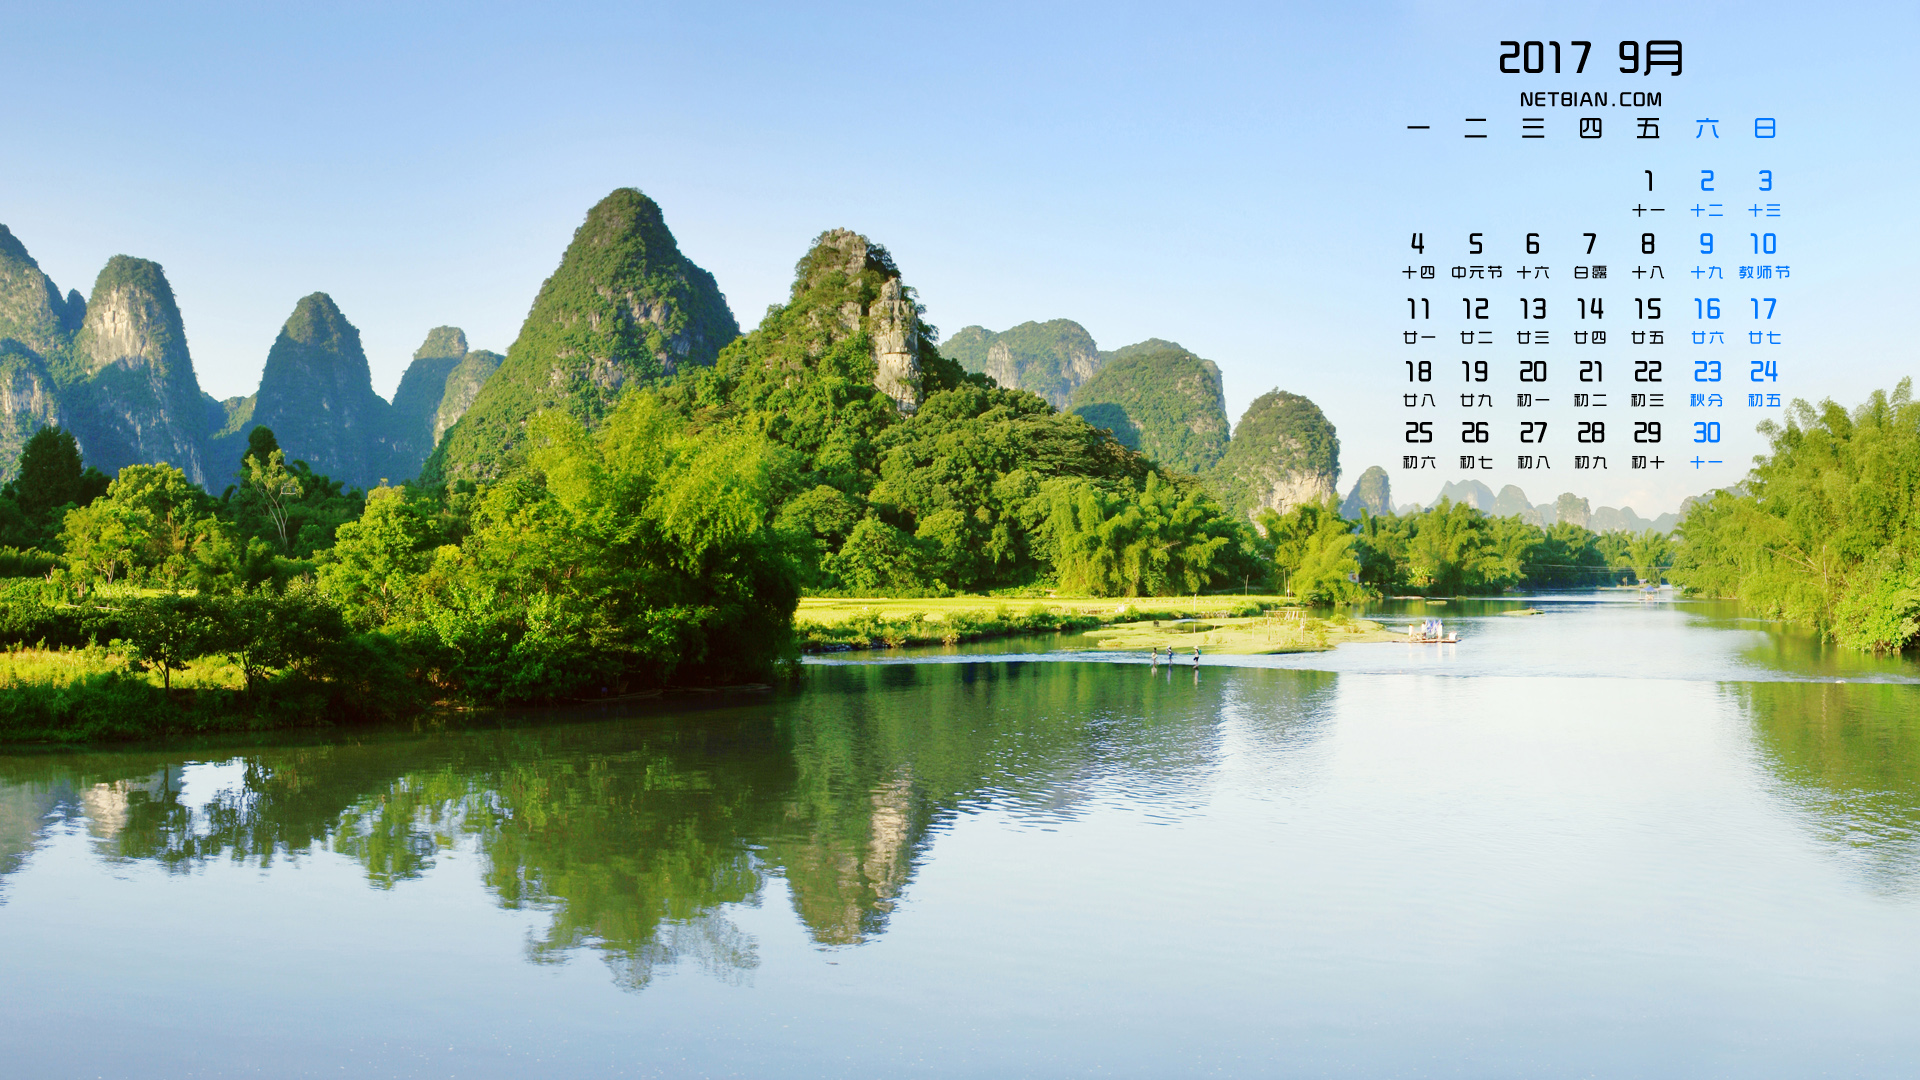 桂林山水风景2017年9月日历桌面壁纸高清大图预览1920x1080 2017年